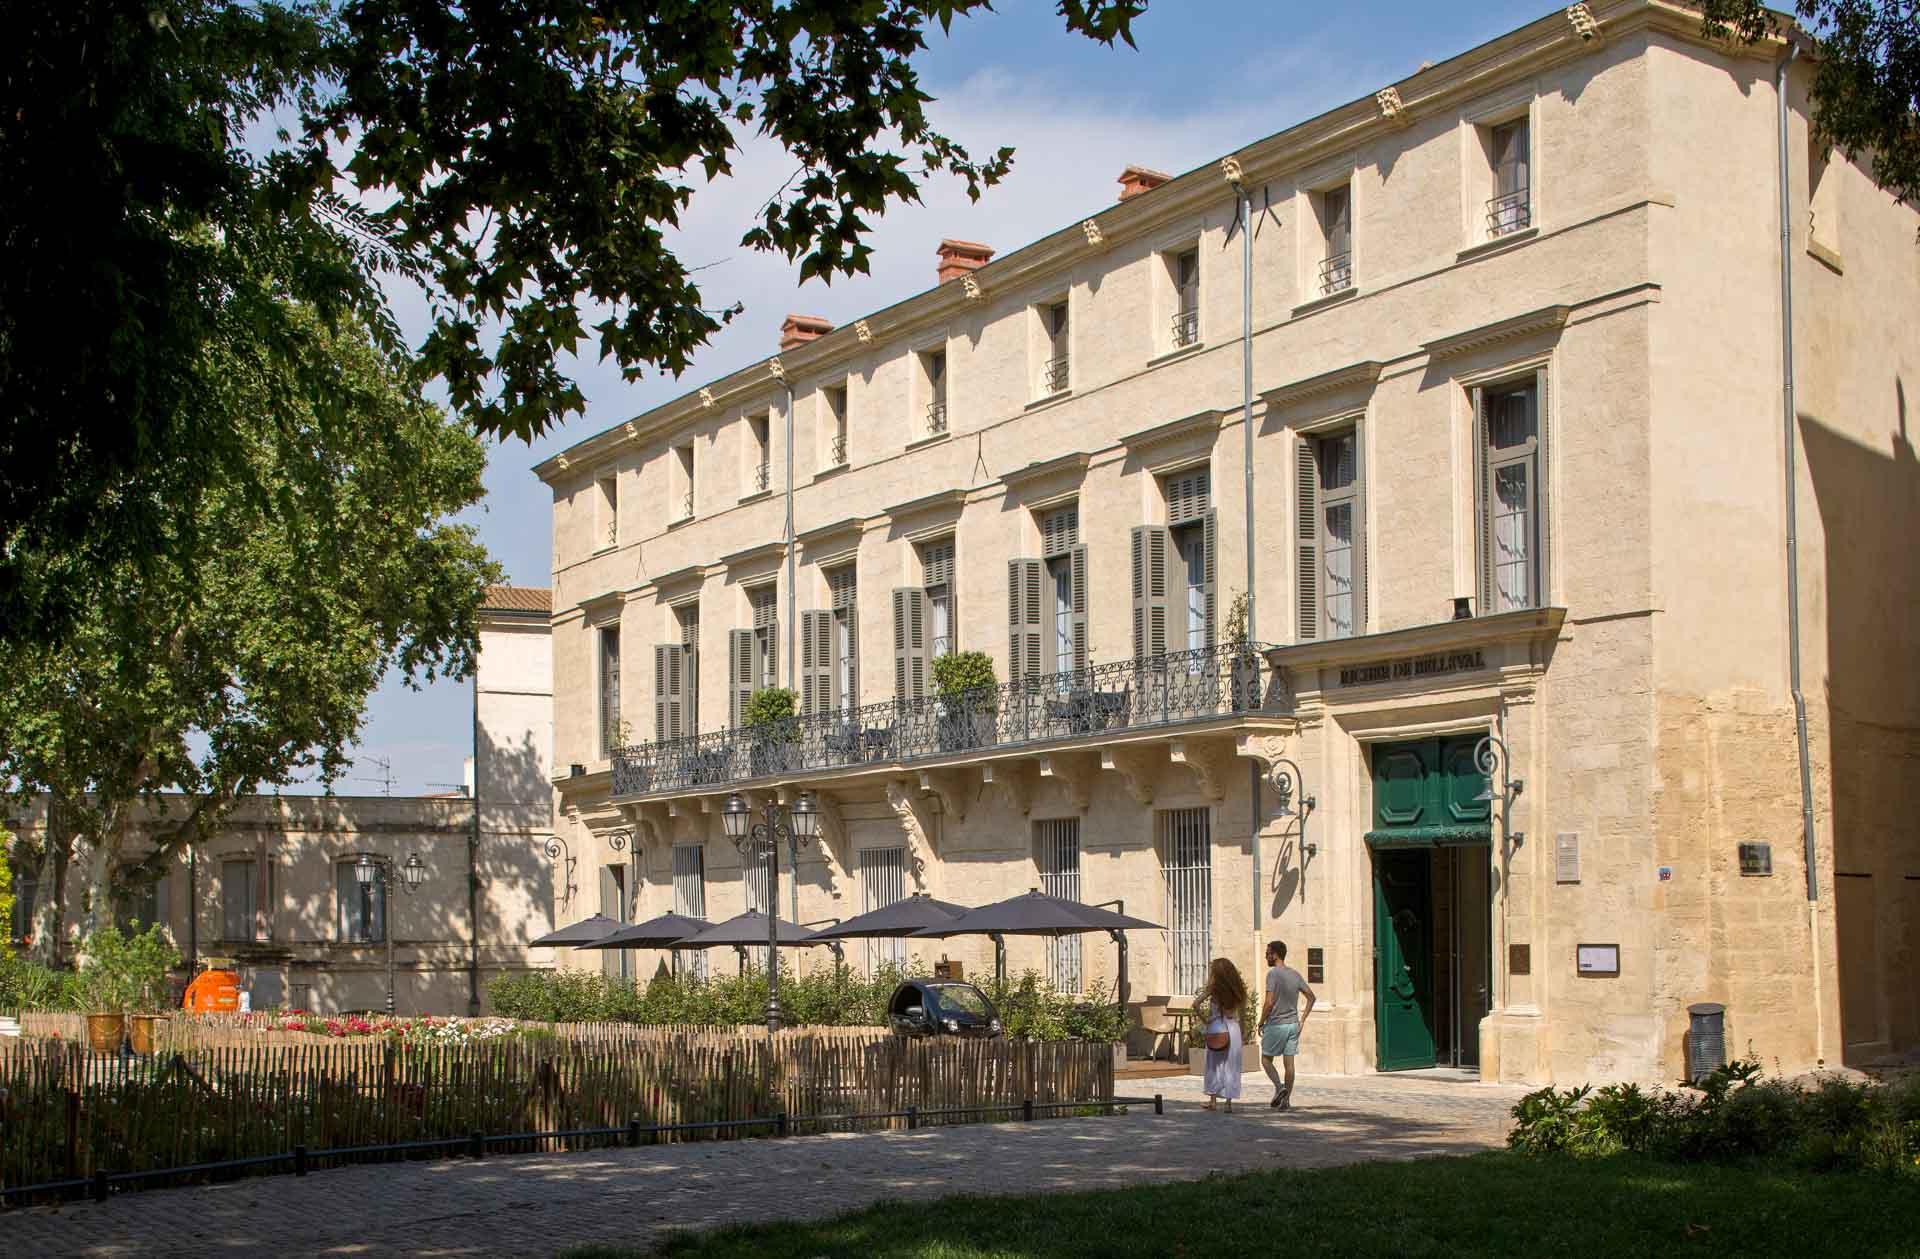 Hôtel Richer de Belleval © agence sweep jerome mondiere